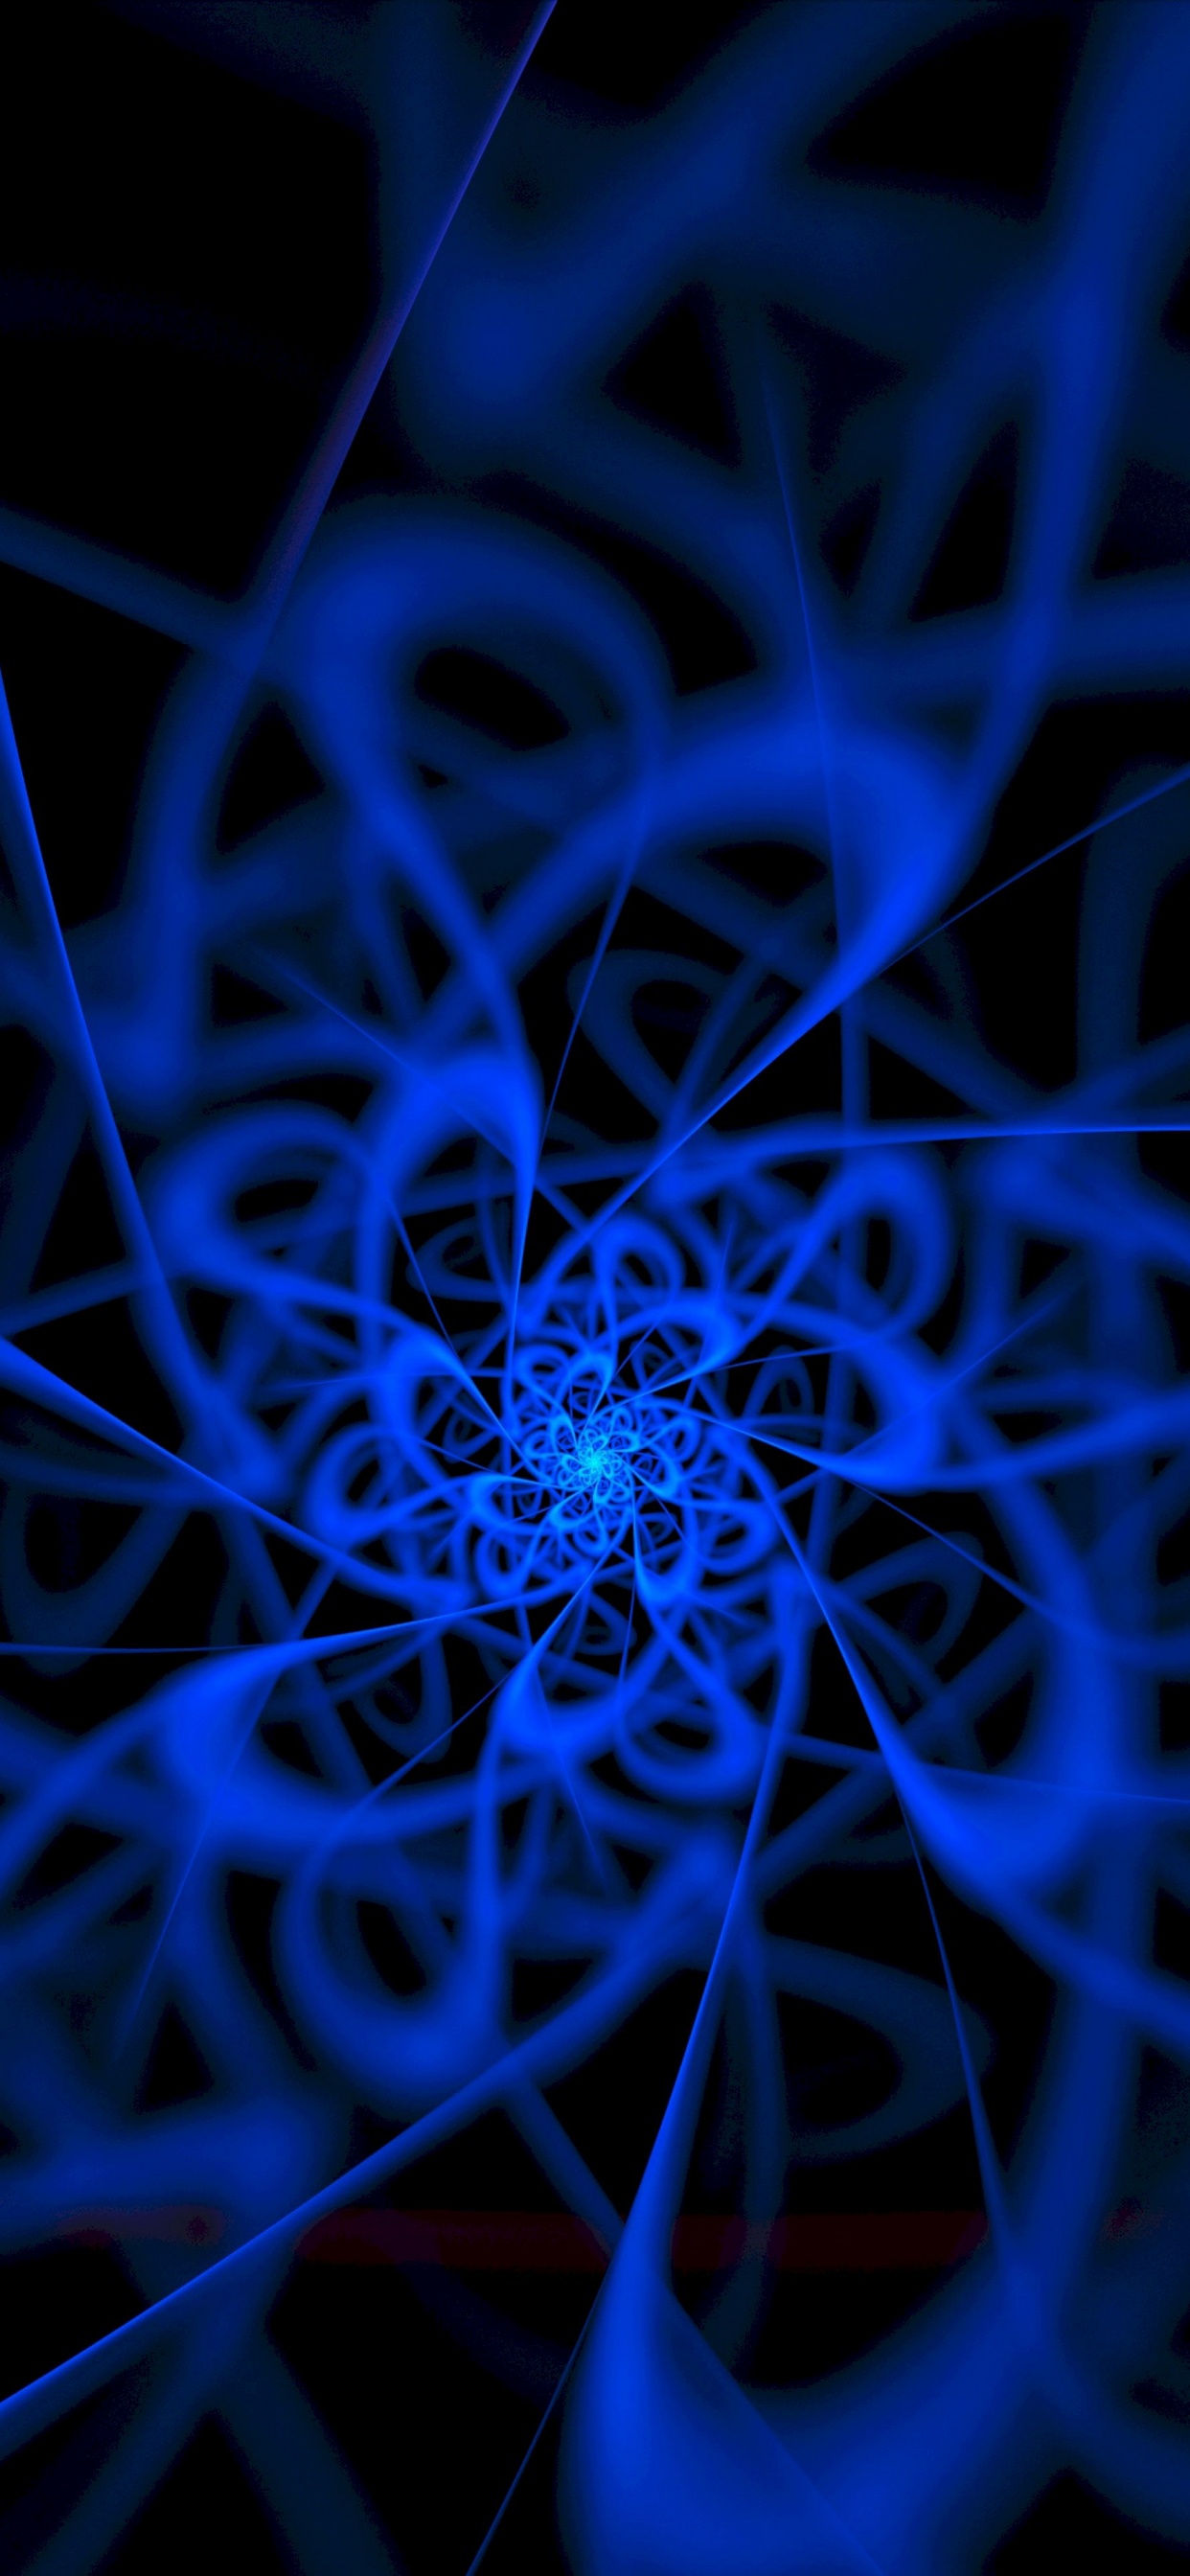 Blaue Und Weiße Spirale Abbildung. Wallpaper in 1242x2688 Resolution